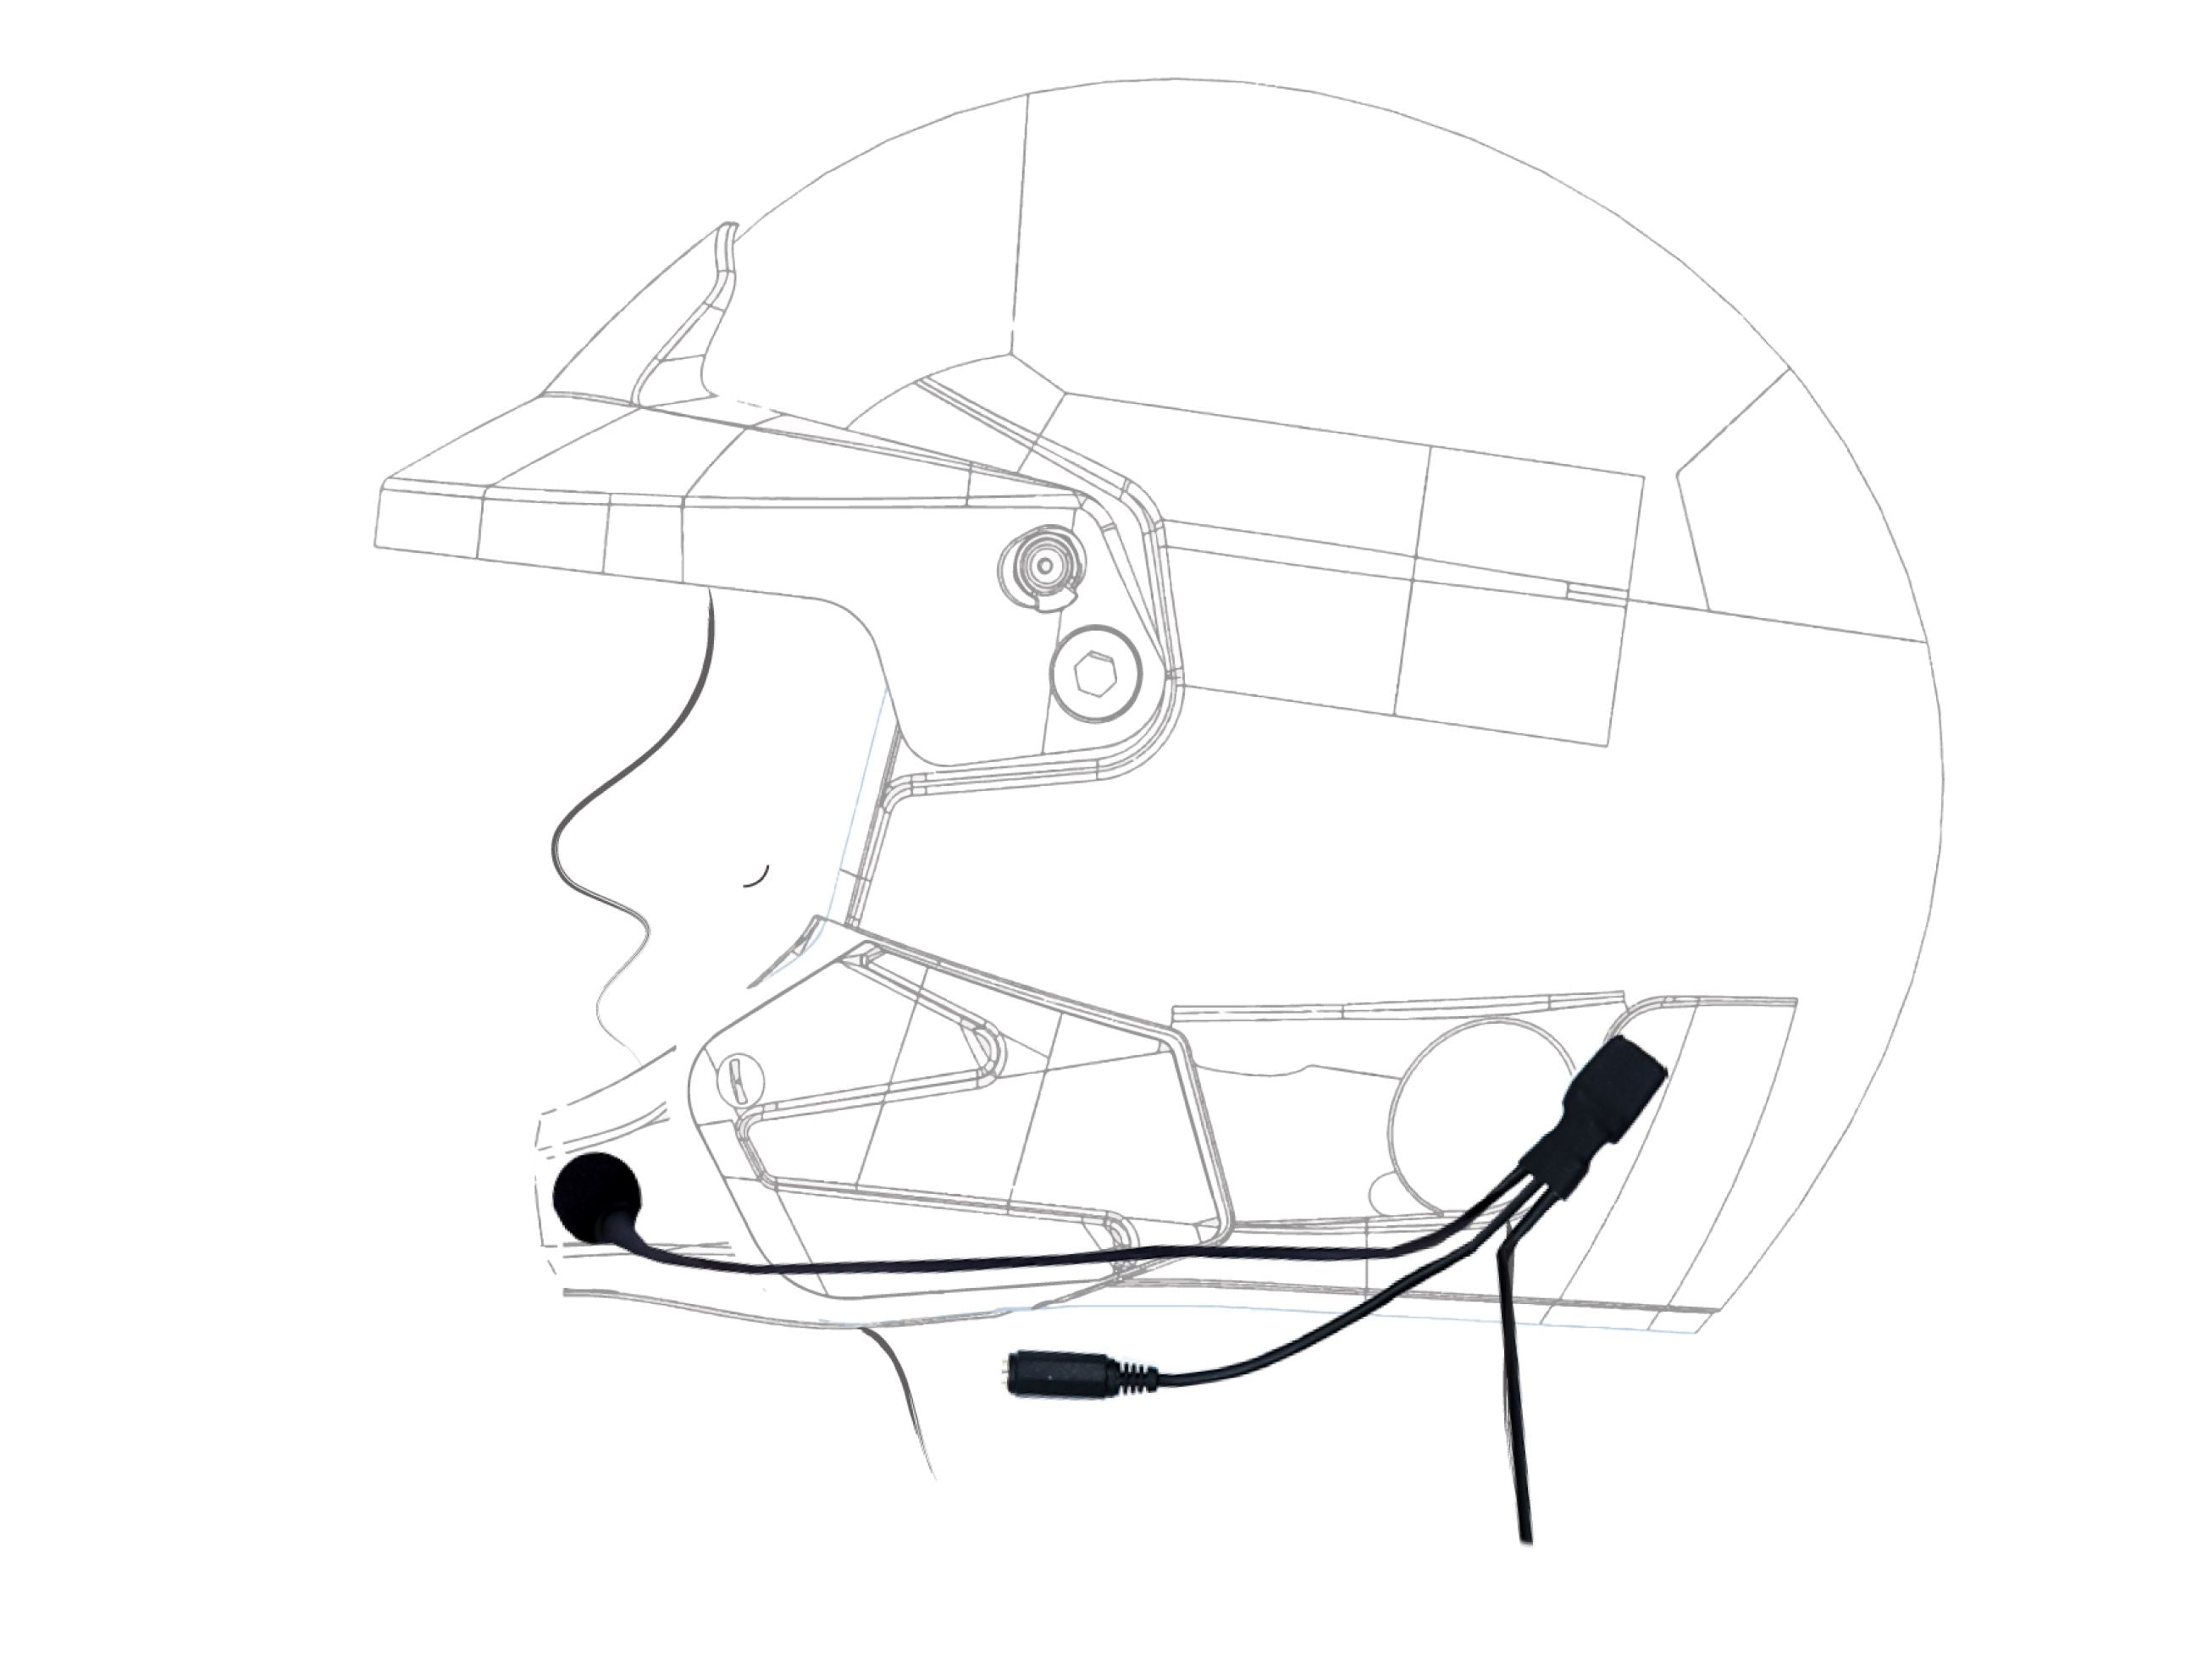 ZERONOISE 6300001 Radio helmet kit for Jet helmet, Female Nexus 4 PIN, Microphone Flex Boom, with Earcups Photo-0 